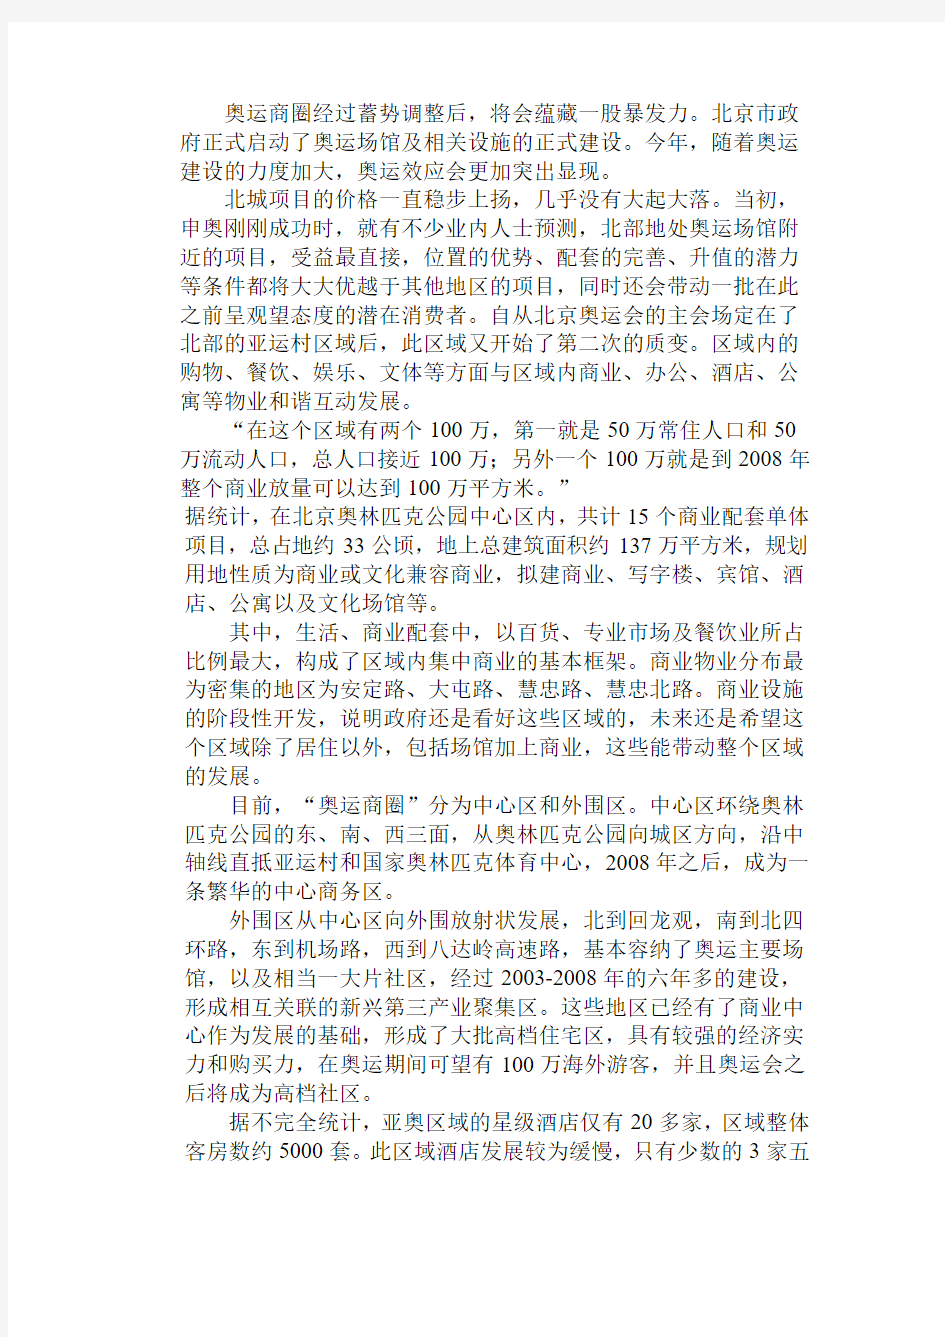 成宏酒店基本情况 - 北京产权交易所网站——产权市场第一